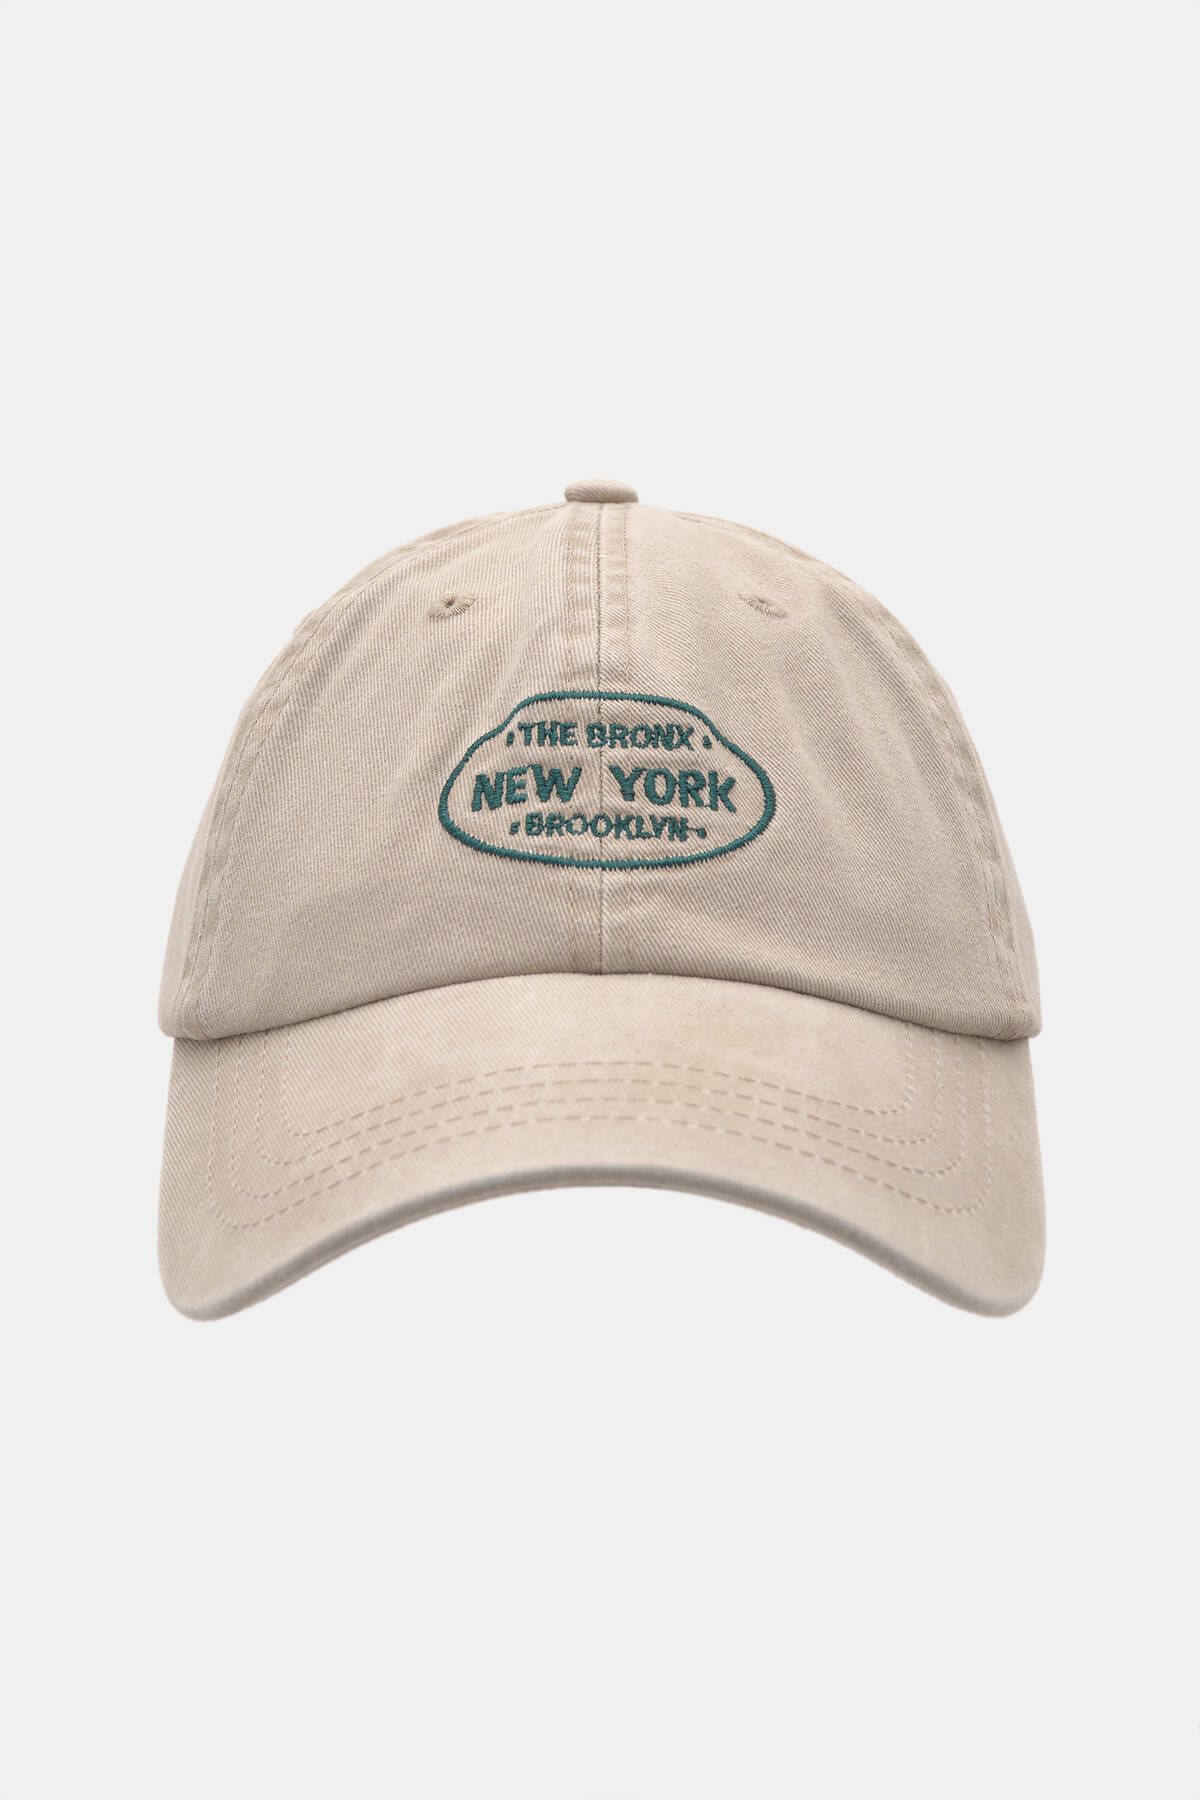 Pull & Bear New York işlemeli solmuş görünümlü şapka